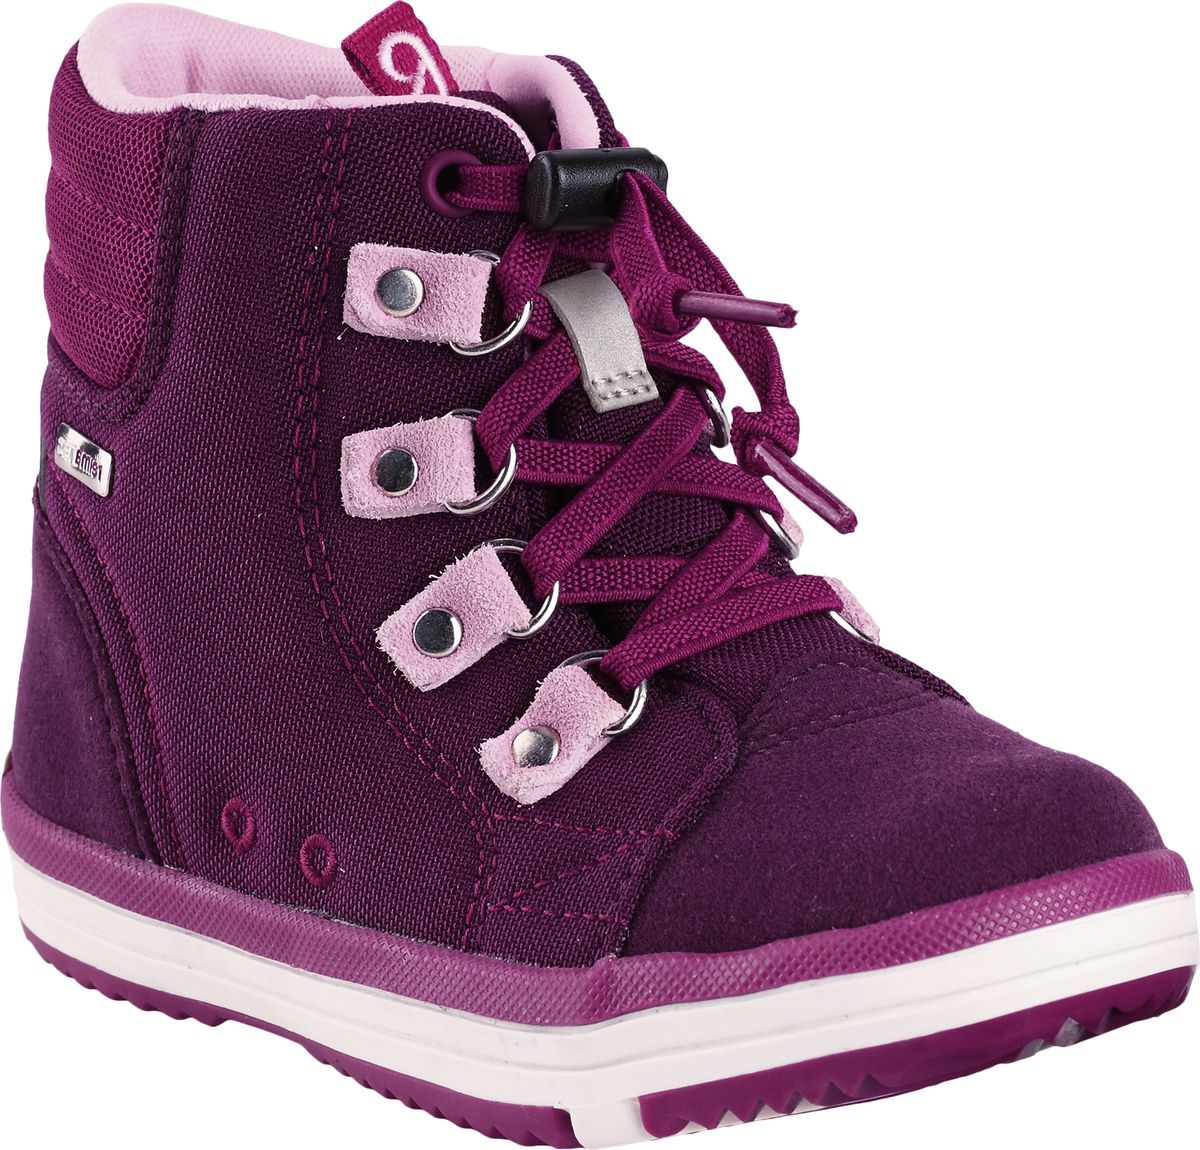 Ботинки детские Reima Wetter, цвет: фиолетовый. 5693434960. Размер 28